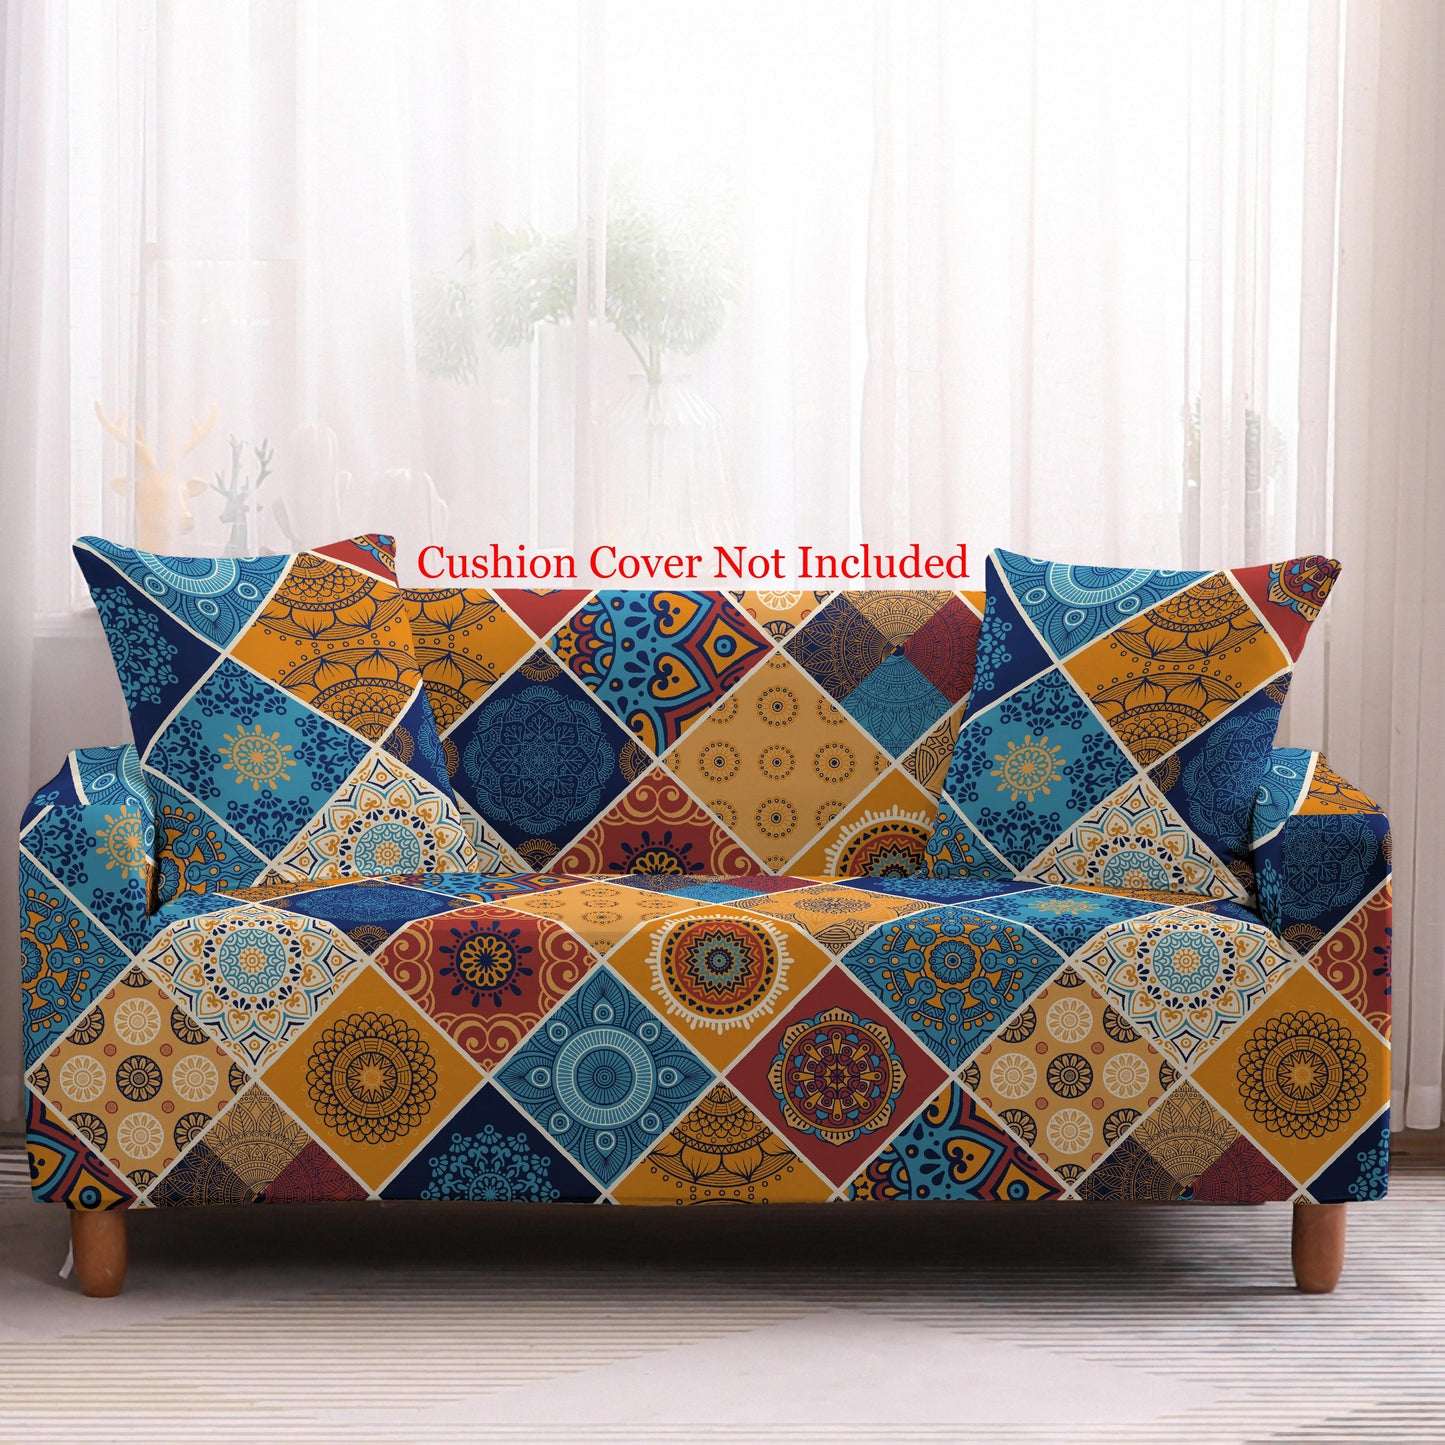 Bohemian Print Sofa Cover - Mandala Blue Yellow